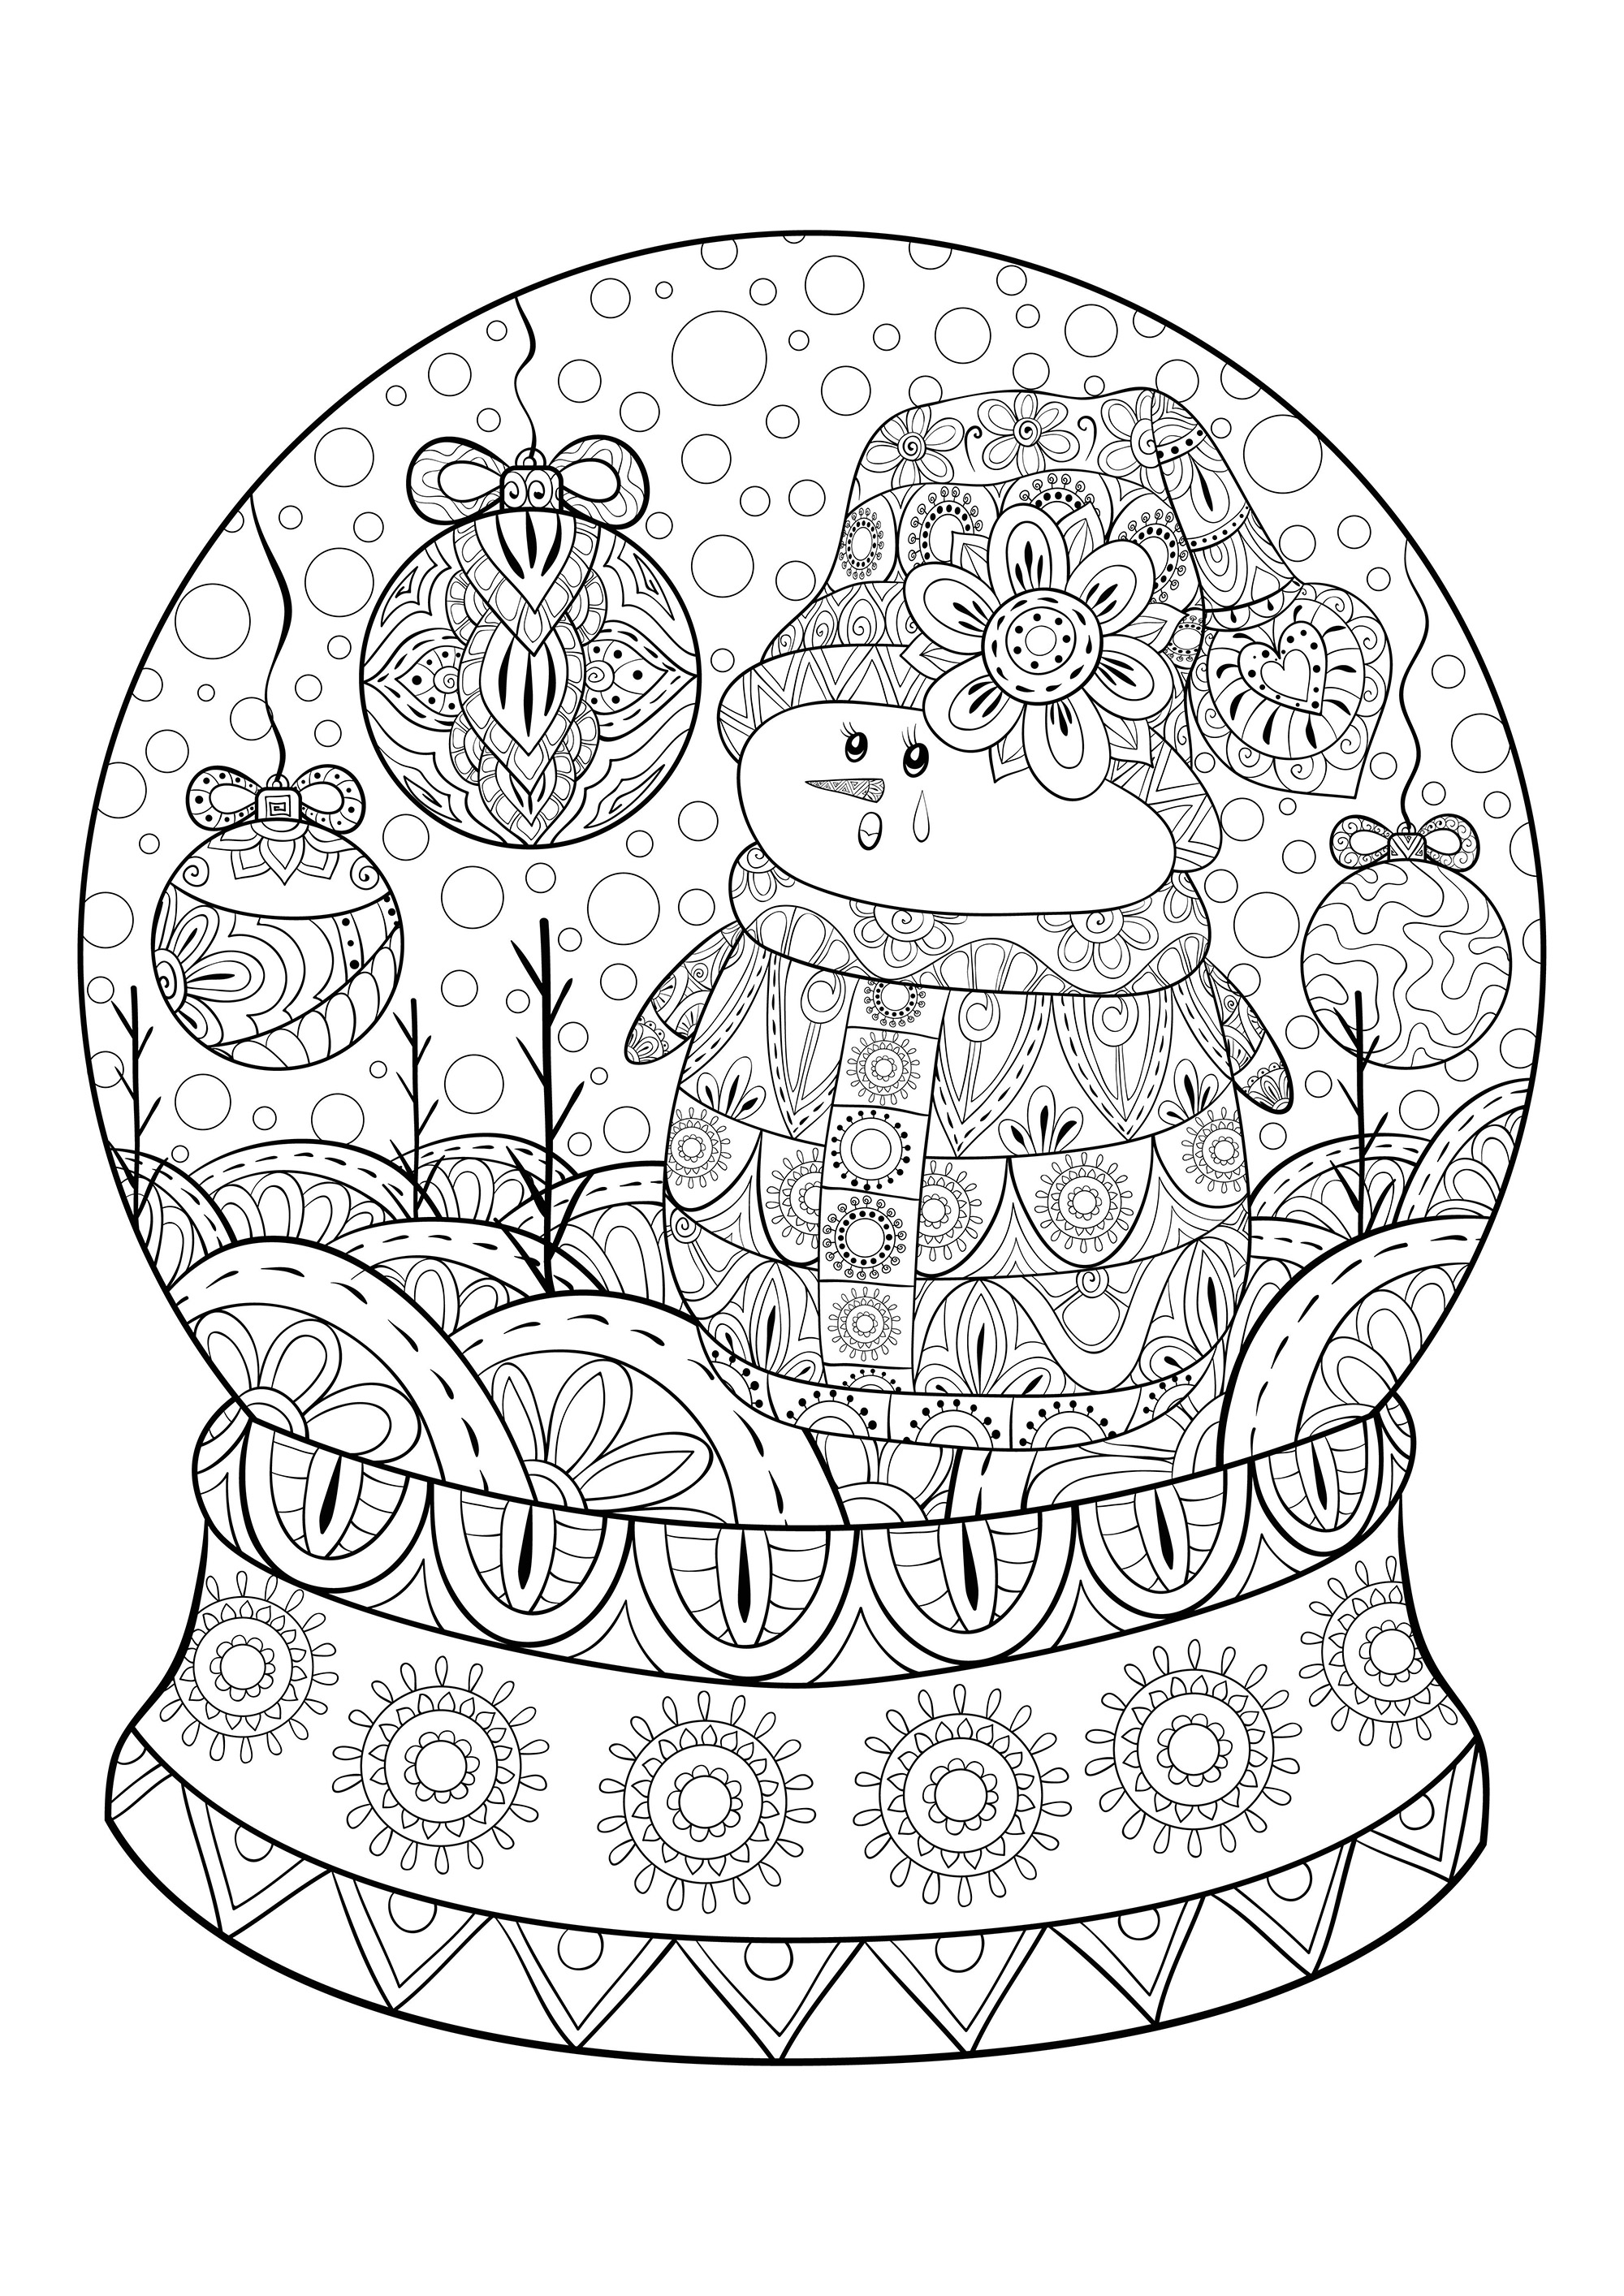 Um globo de neve de Natal com um boneco de neve e bolas de decoração de Natal, Fonte : 123rf   Artista : Nonuzza